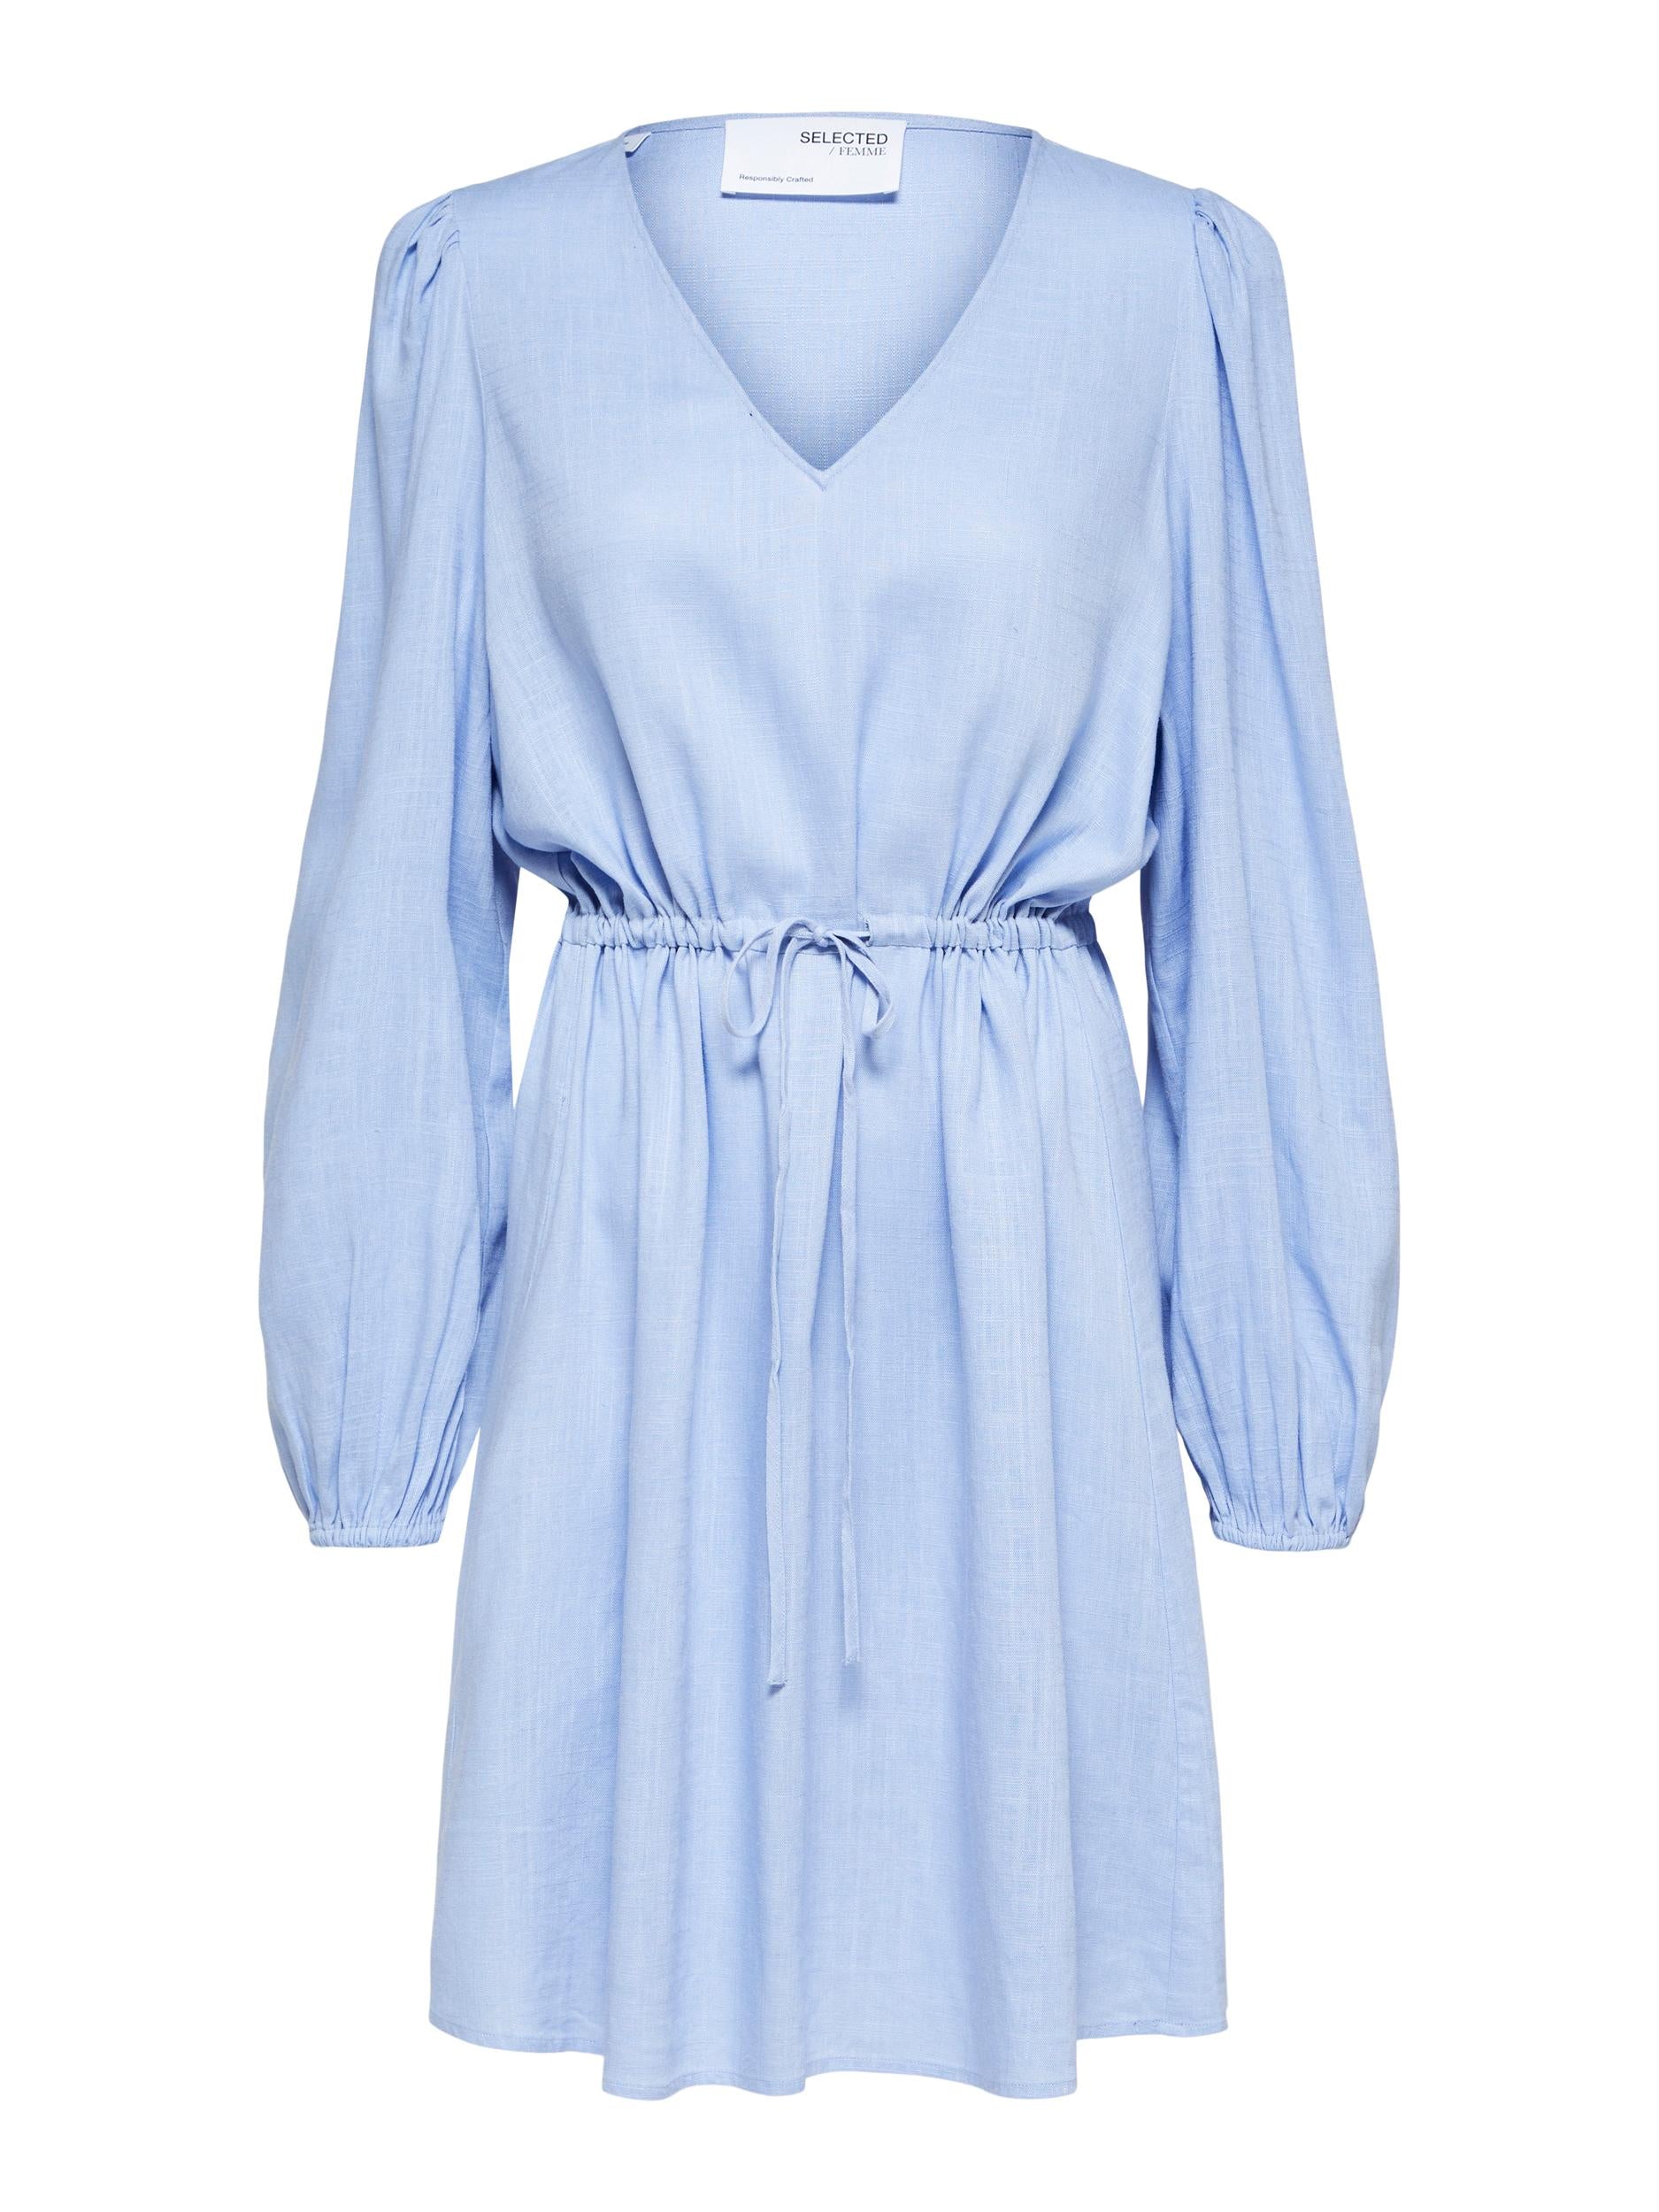 Selected Femme "Viva" Short Linen Dress blau